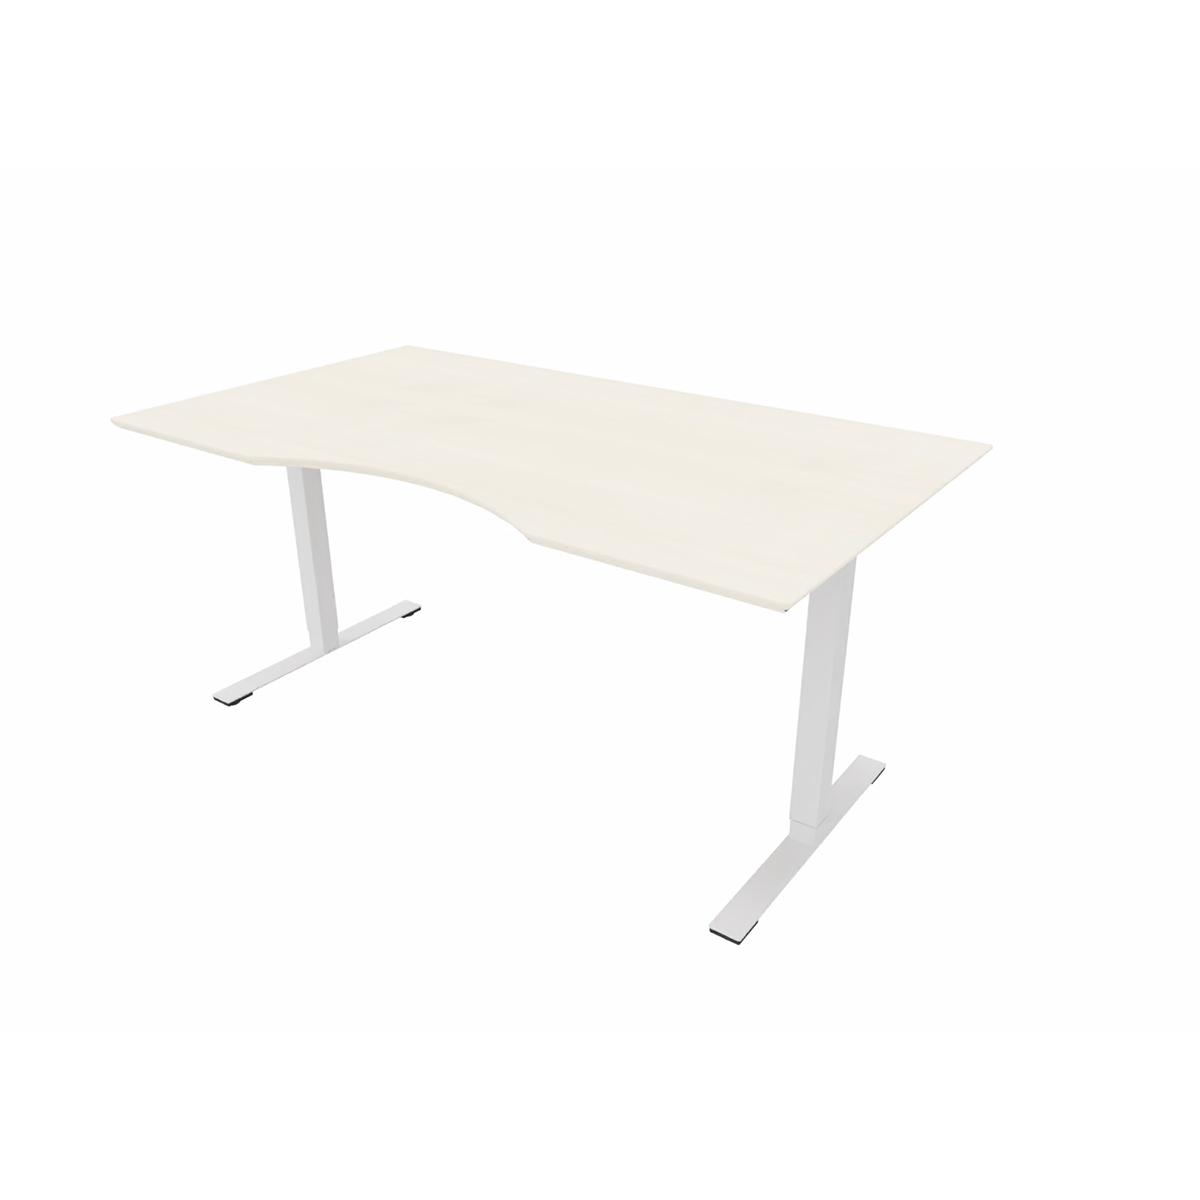 Hæve/sænkebord med bordplade, 160x90/80 cm. Ahorn finer.